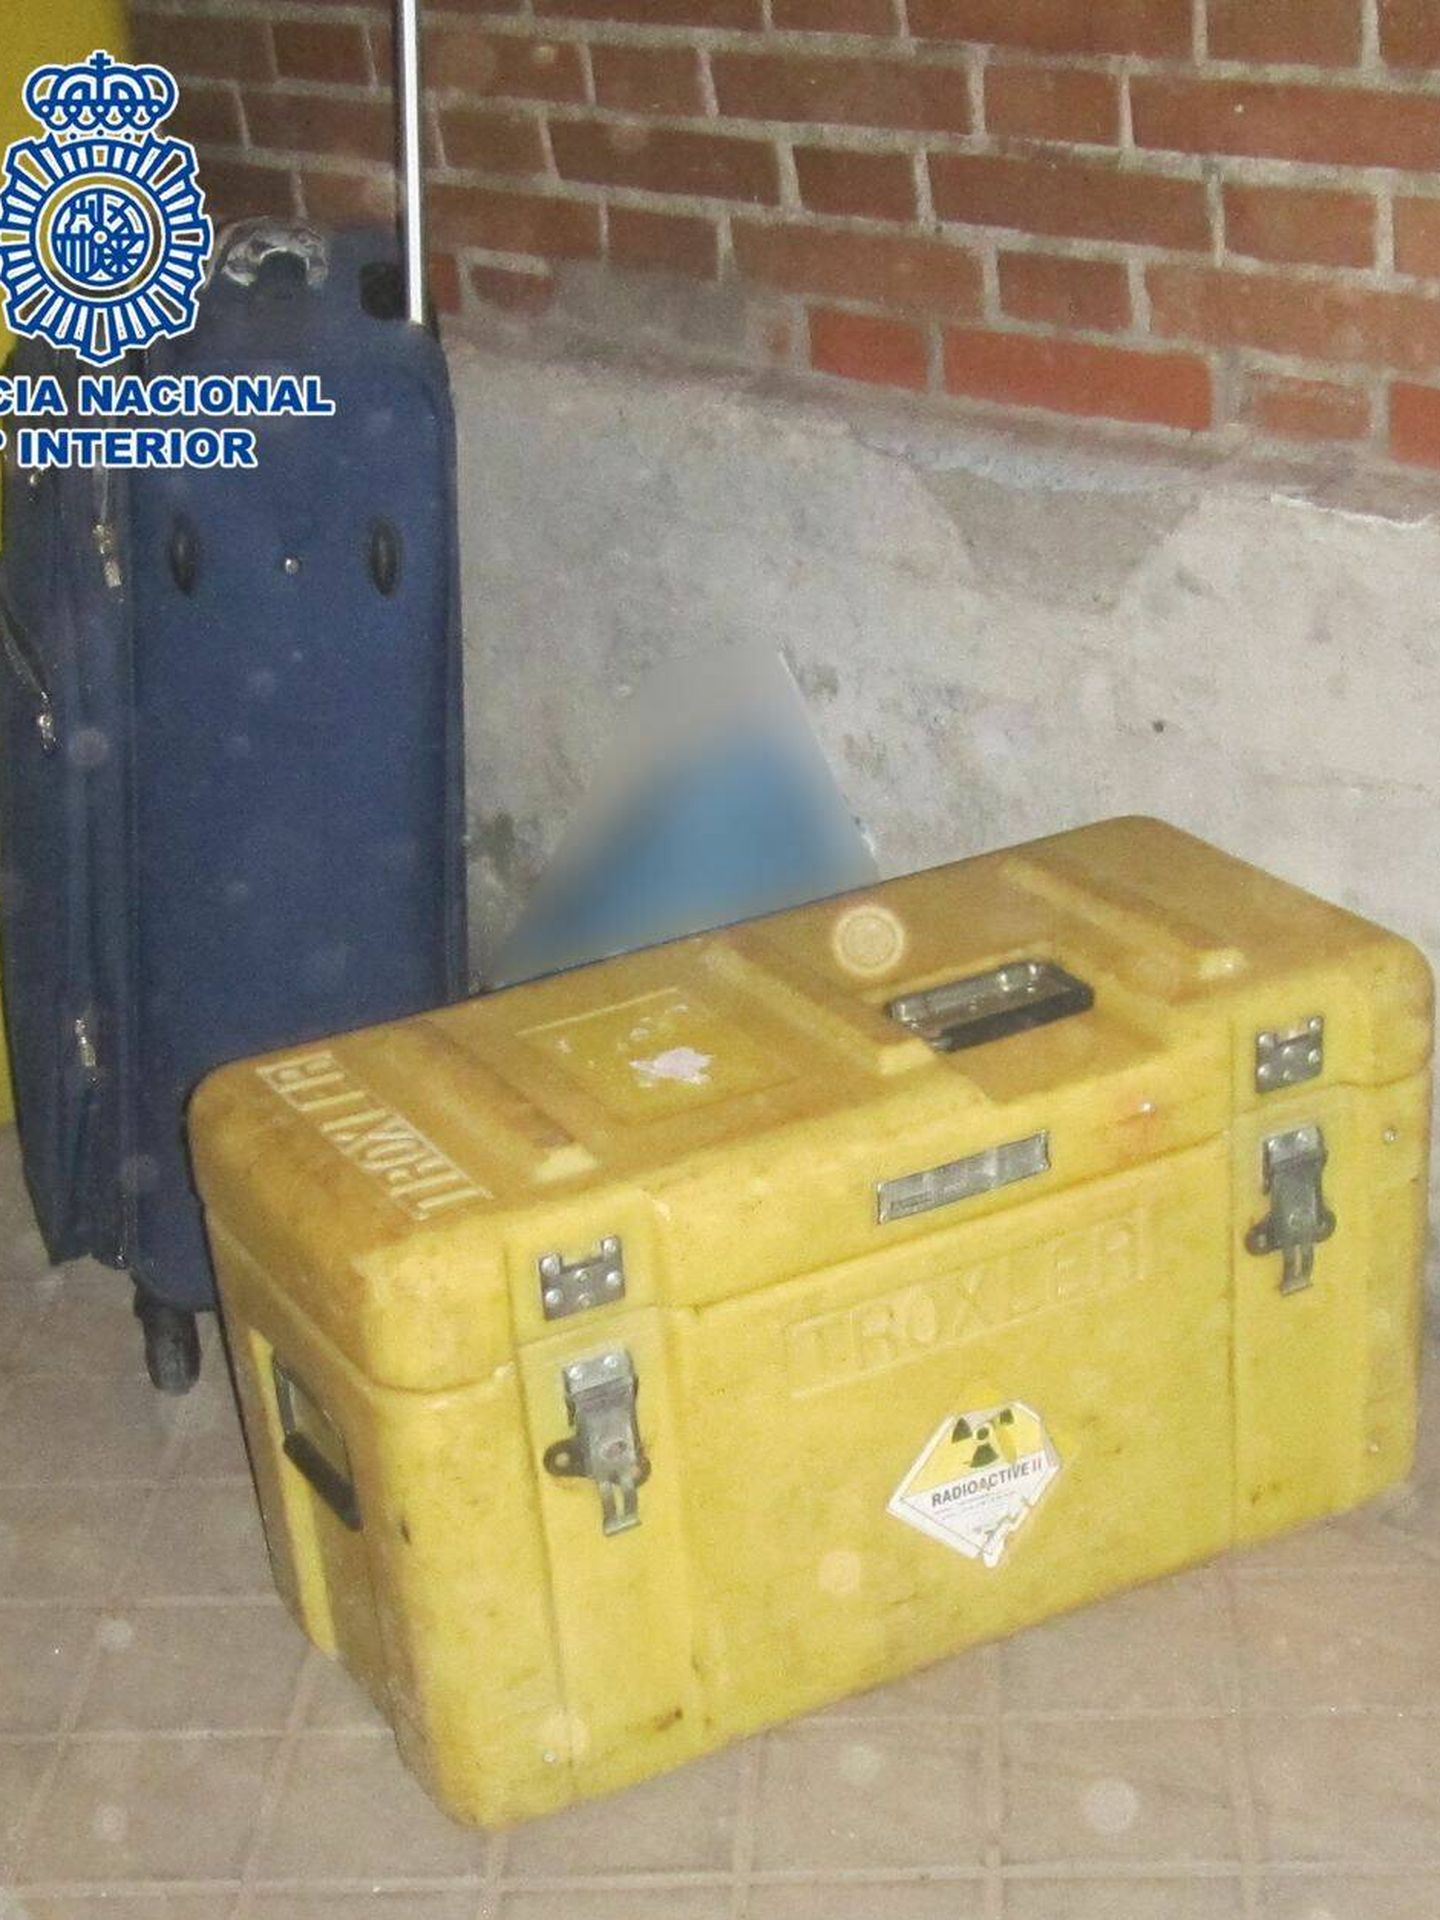 Maleta y maletín radioactivo encontrando en Usera. (Policía Nacional)